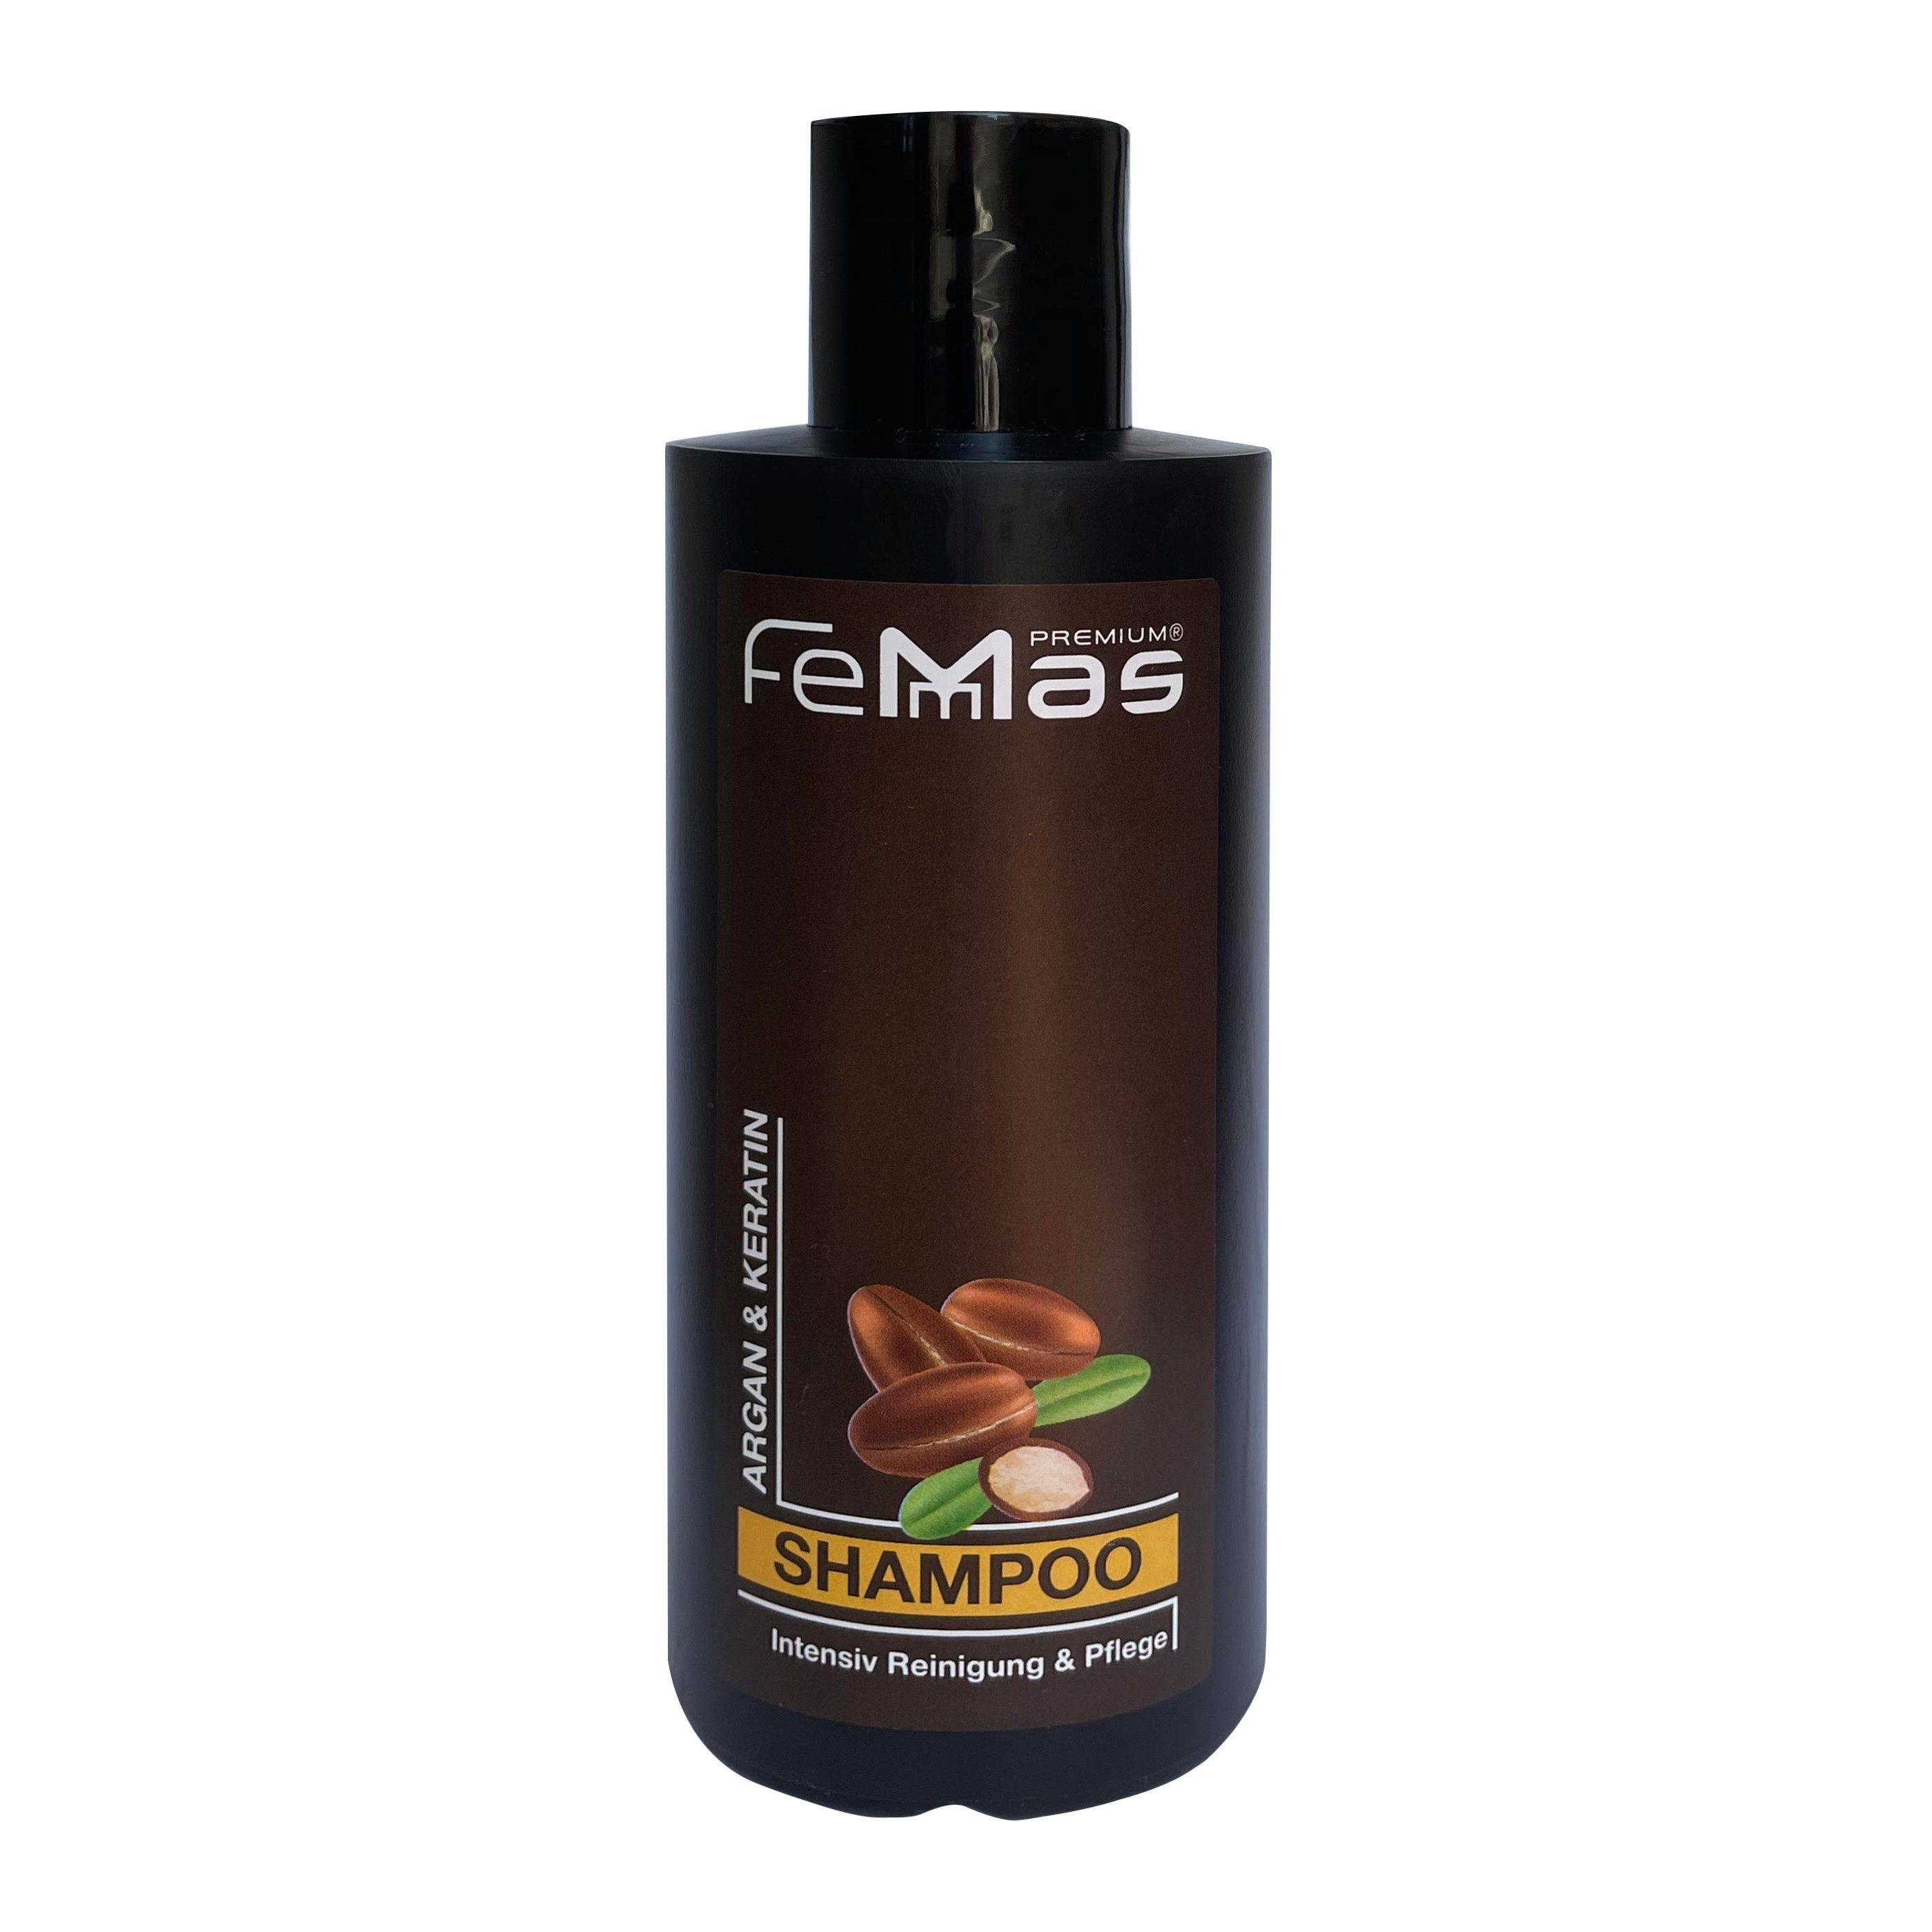 Femmas Premium FemMas & Haarshampoo 300ml Shampoo Argan Keratin